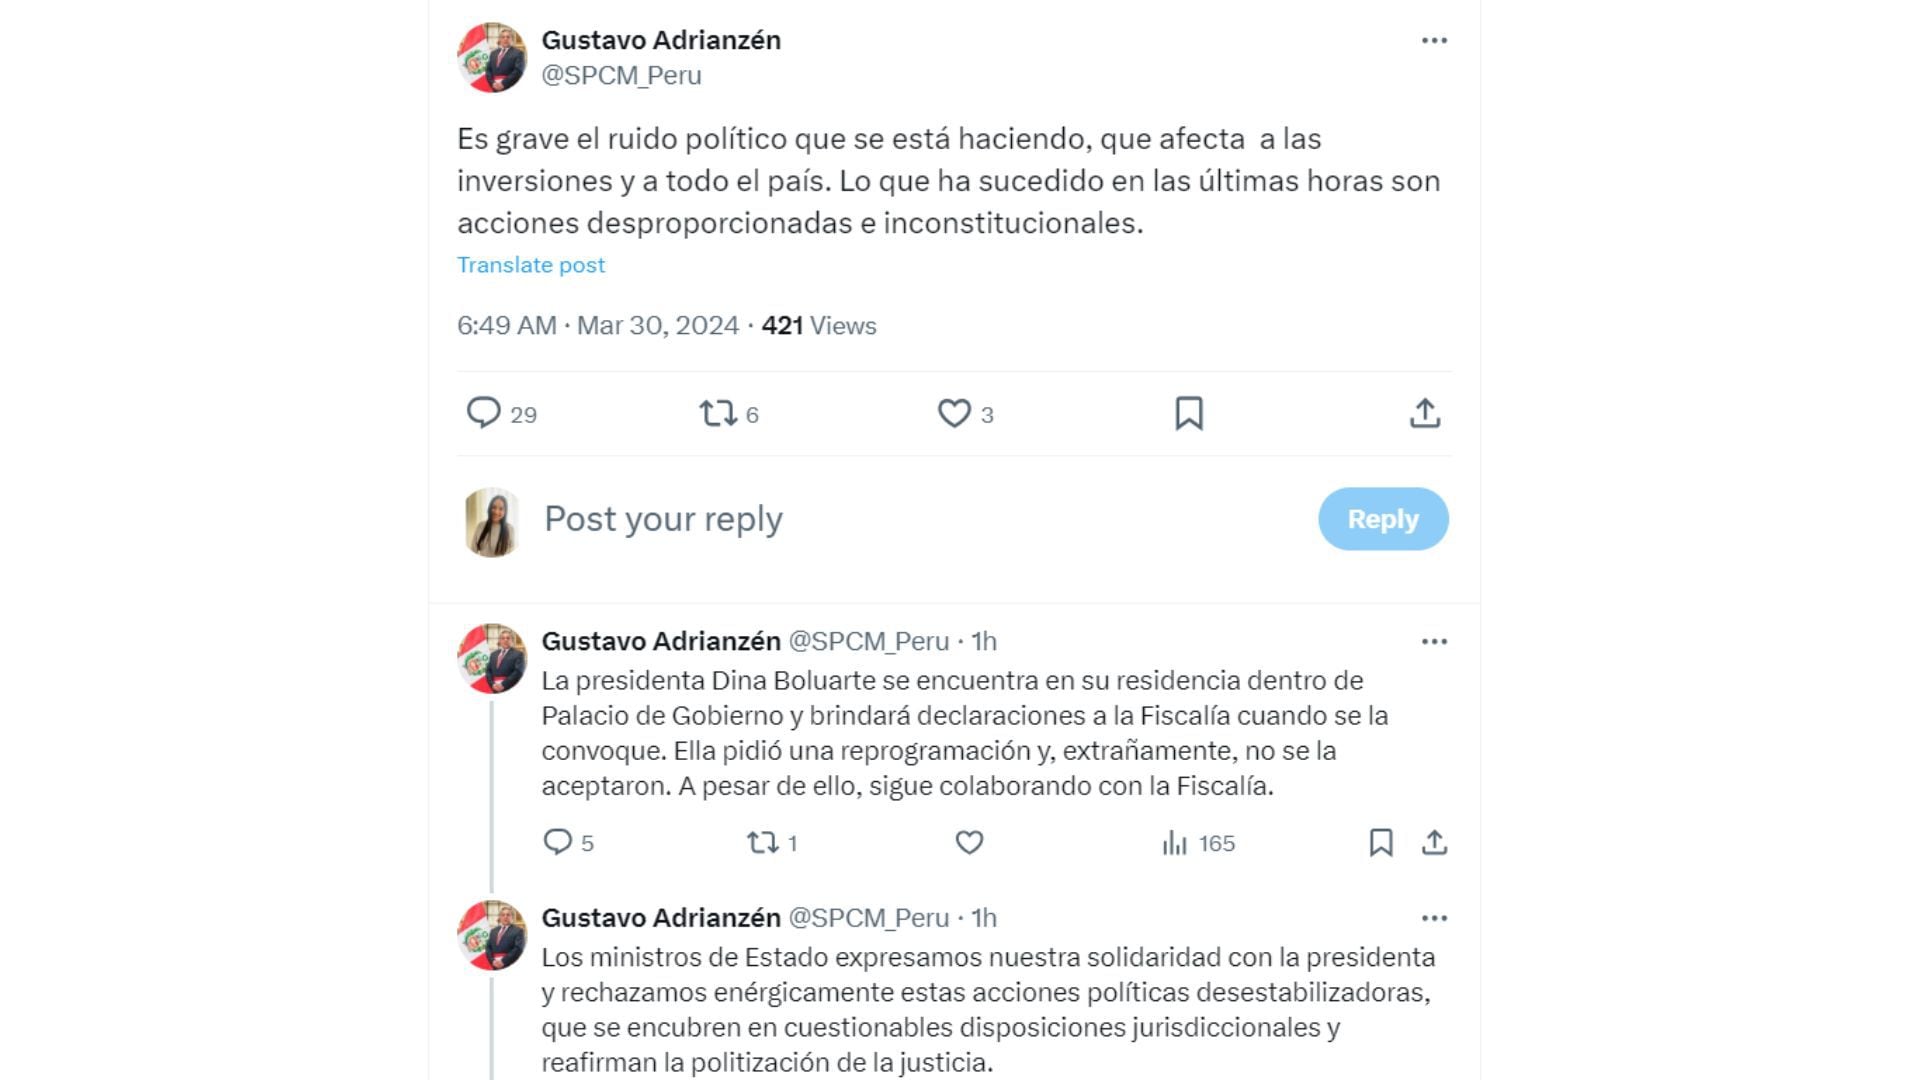 El premier Gustavo Adrianzén descarta renuncia de la presidenta Dina Boluarte y los ministros de Estado| X